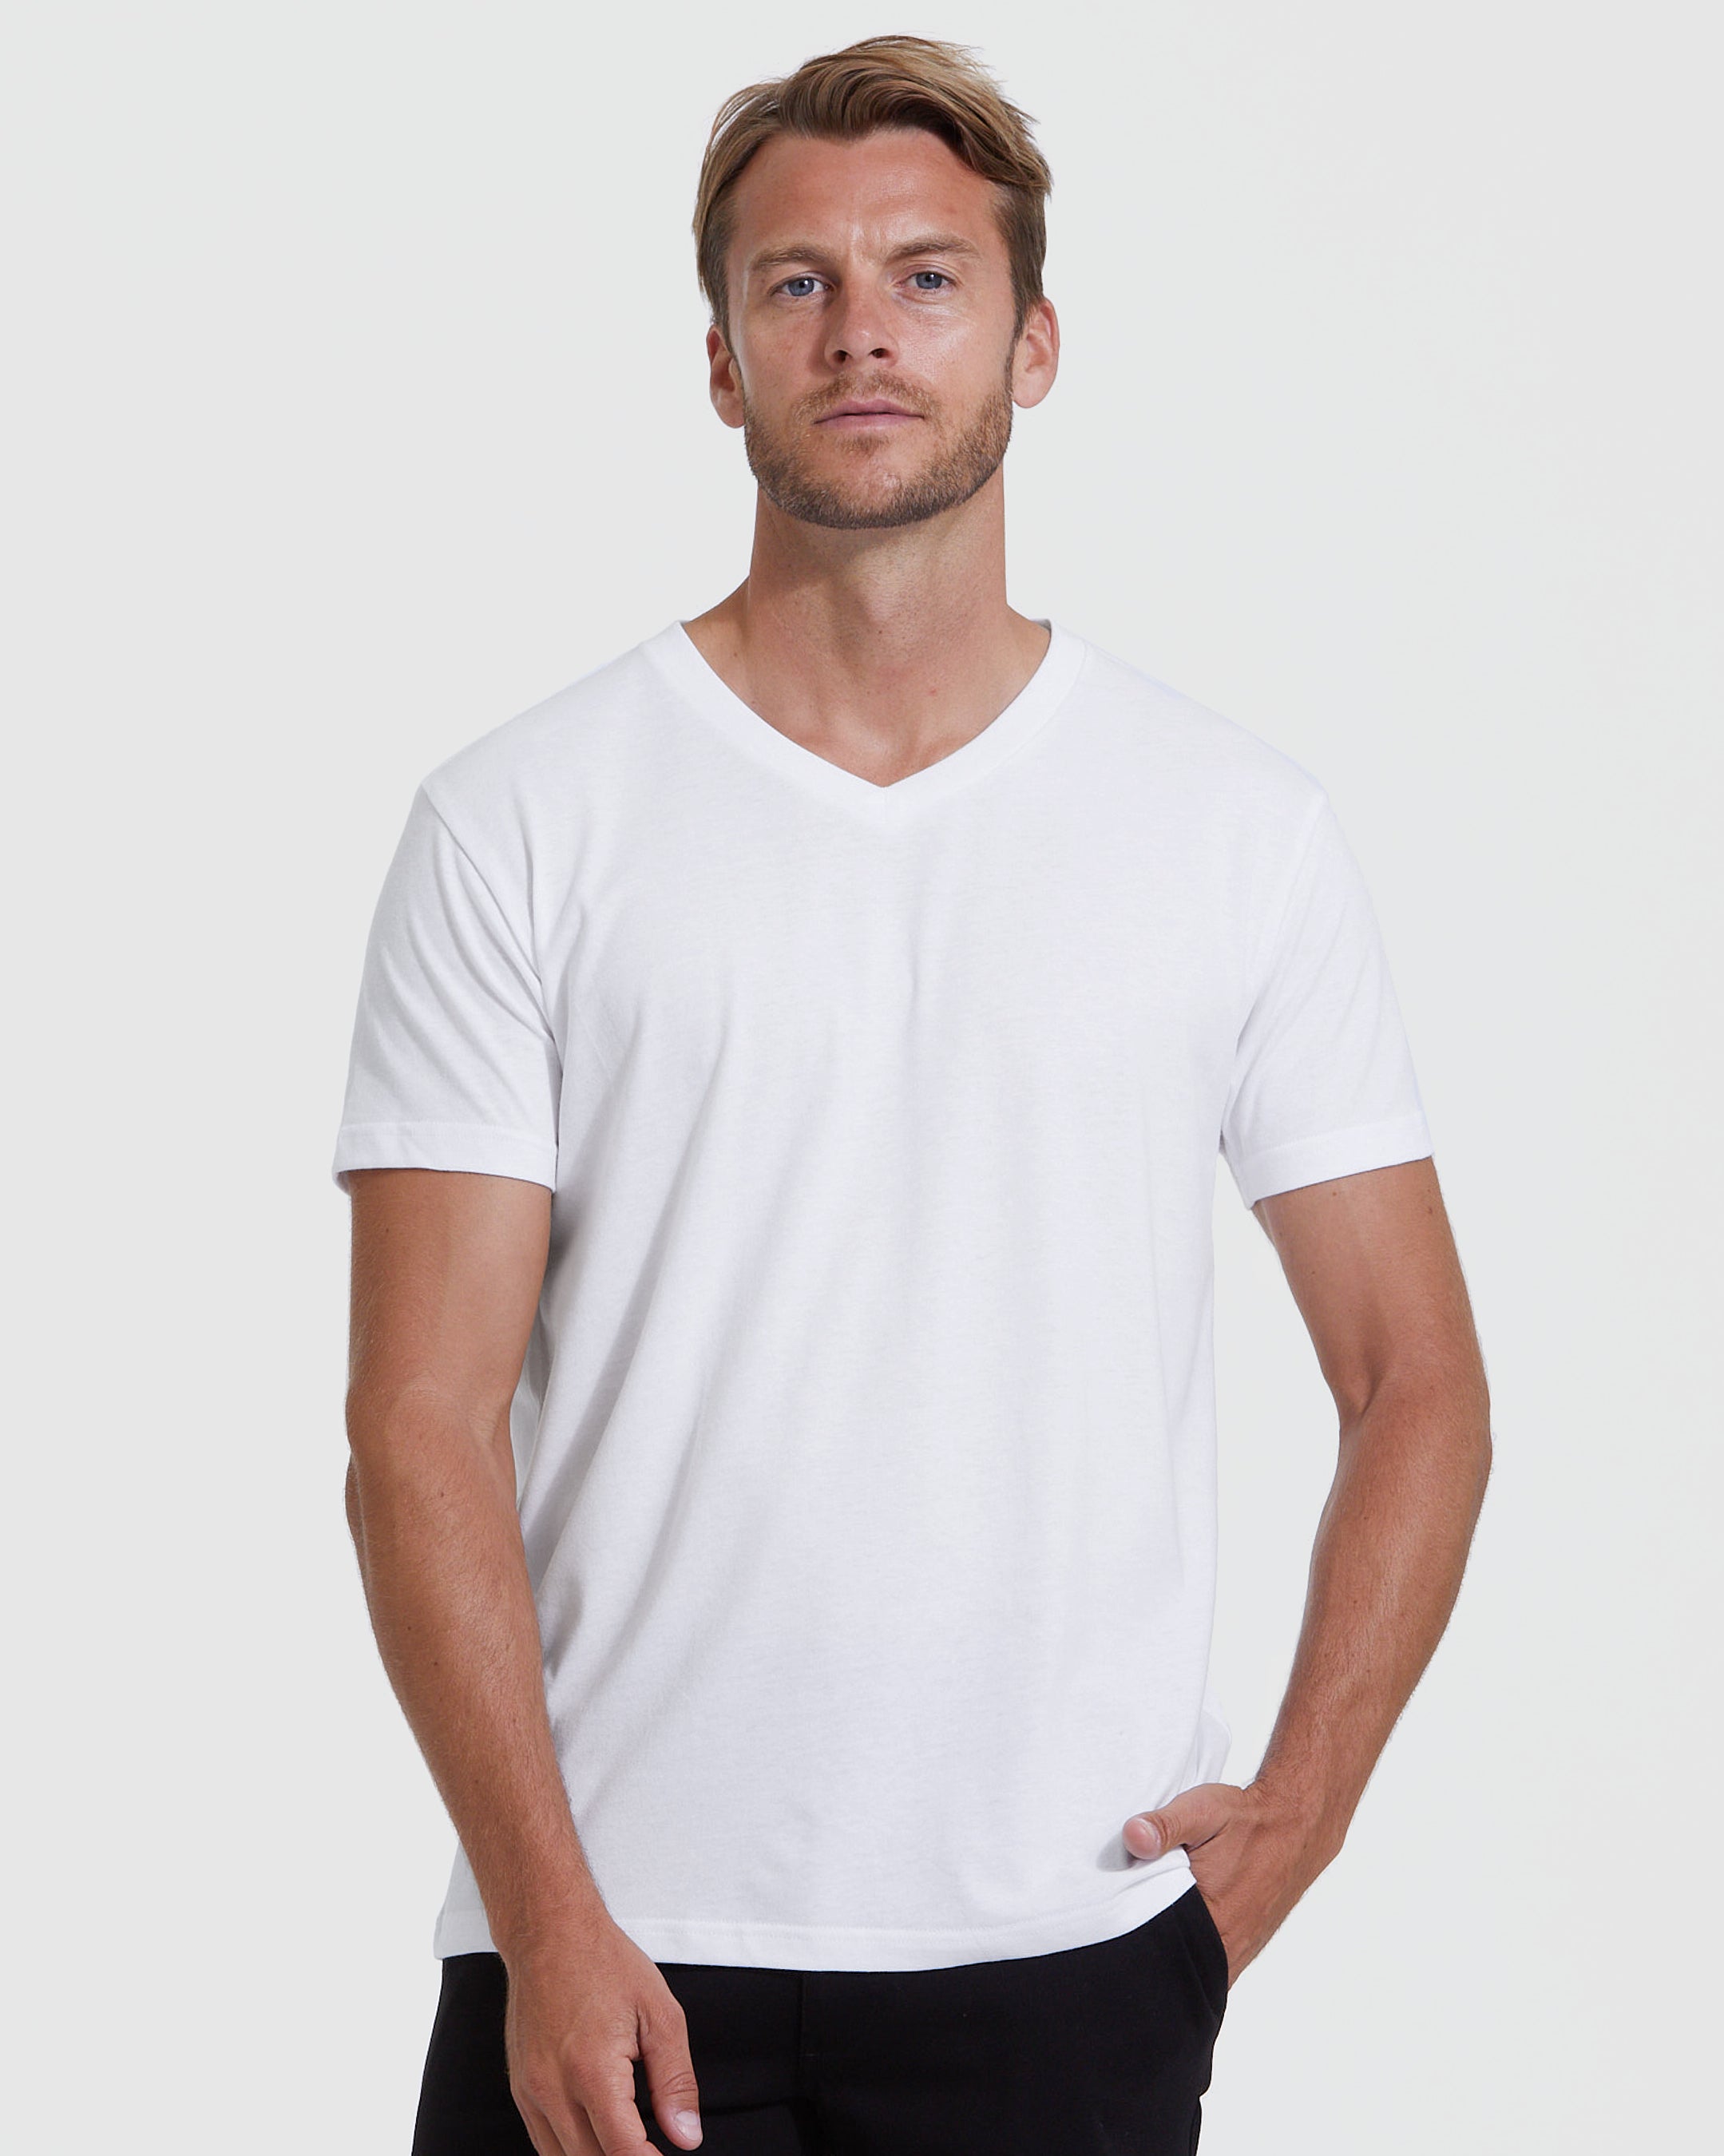 Shirt True | T-Shirt V-Neck | V-Neck White Classic White Men\'s